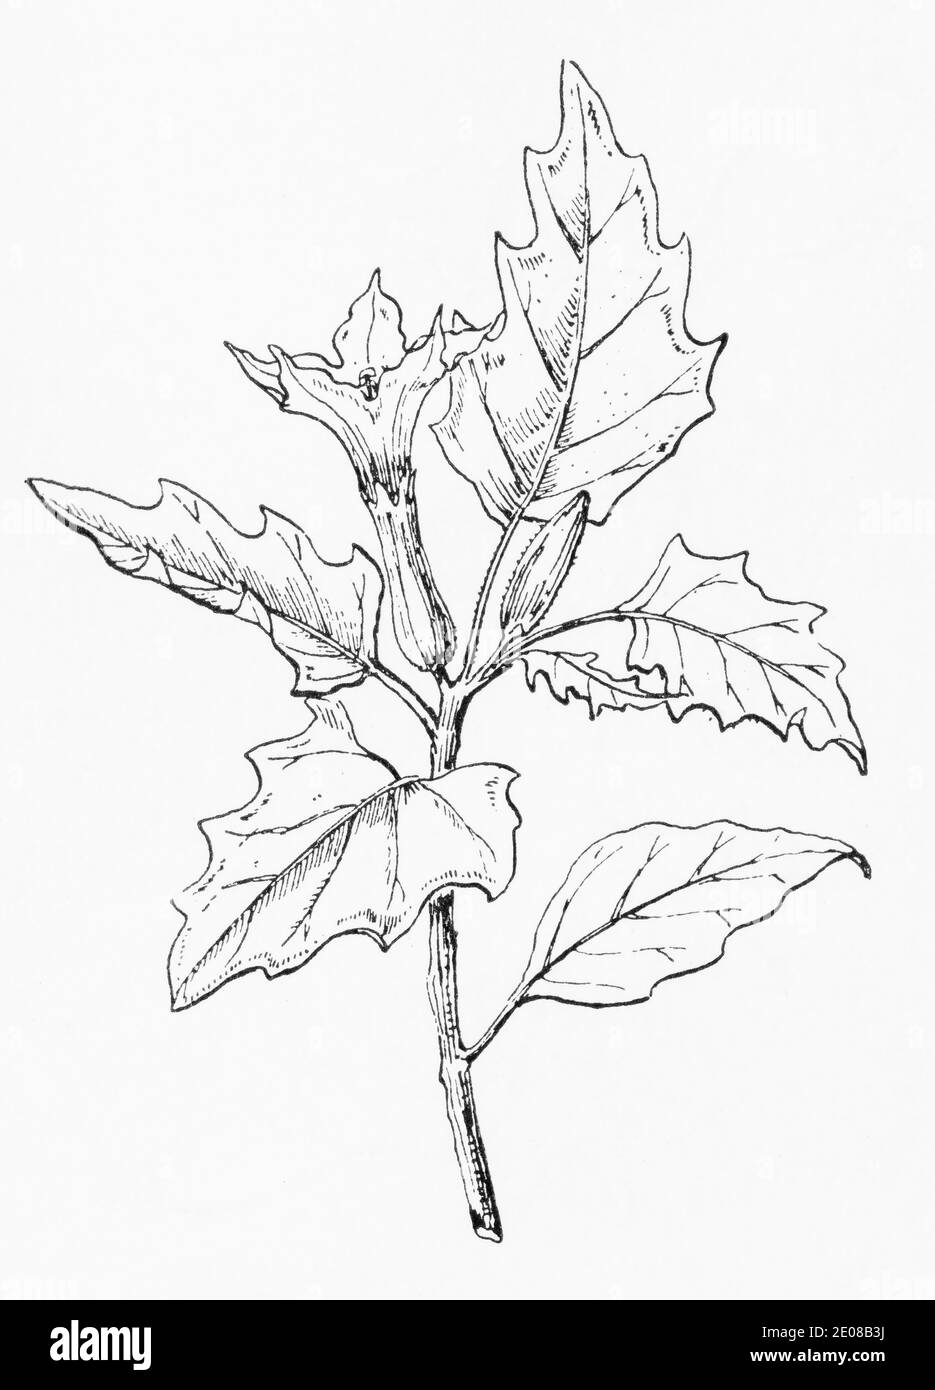 Ancienne gravure d'illustration botanique de Thorn-Apple / Datura stramonium. Plante médicinale traditionnelle, mais toxique mortel. Voir Remarques Banque D'Images